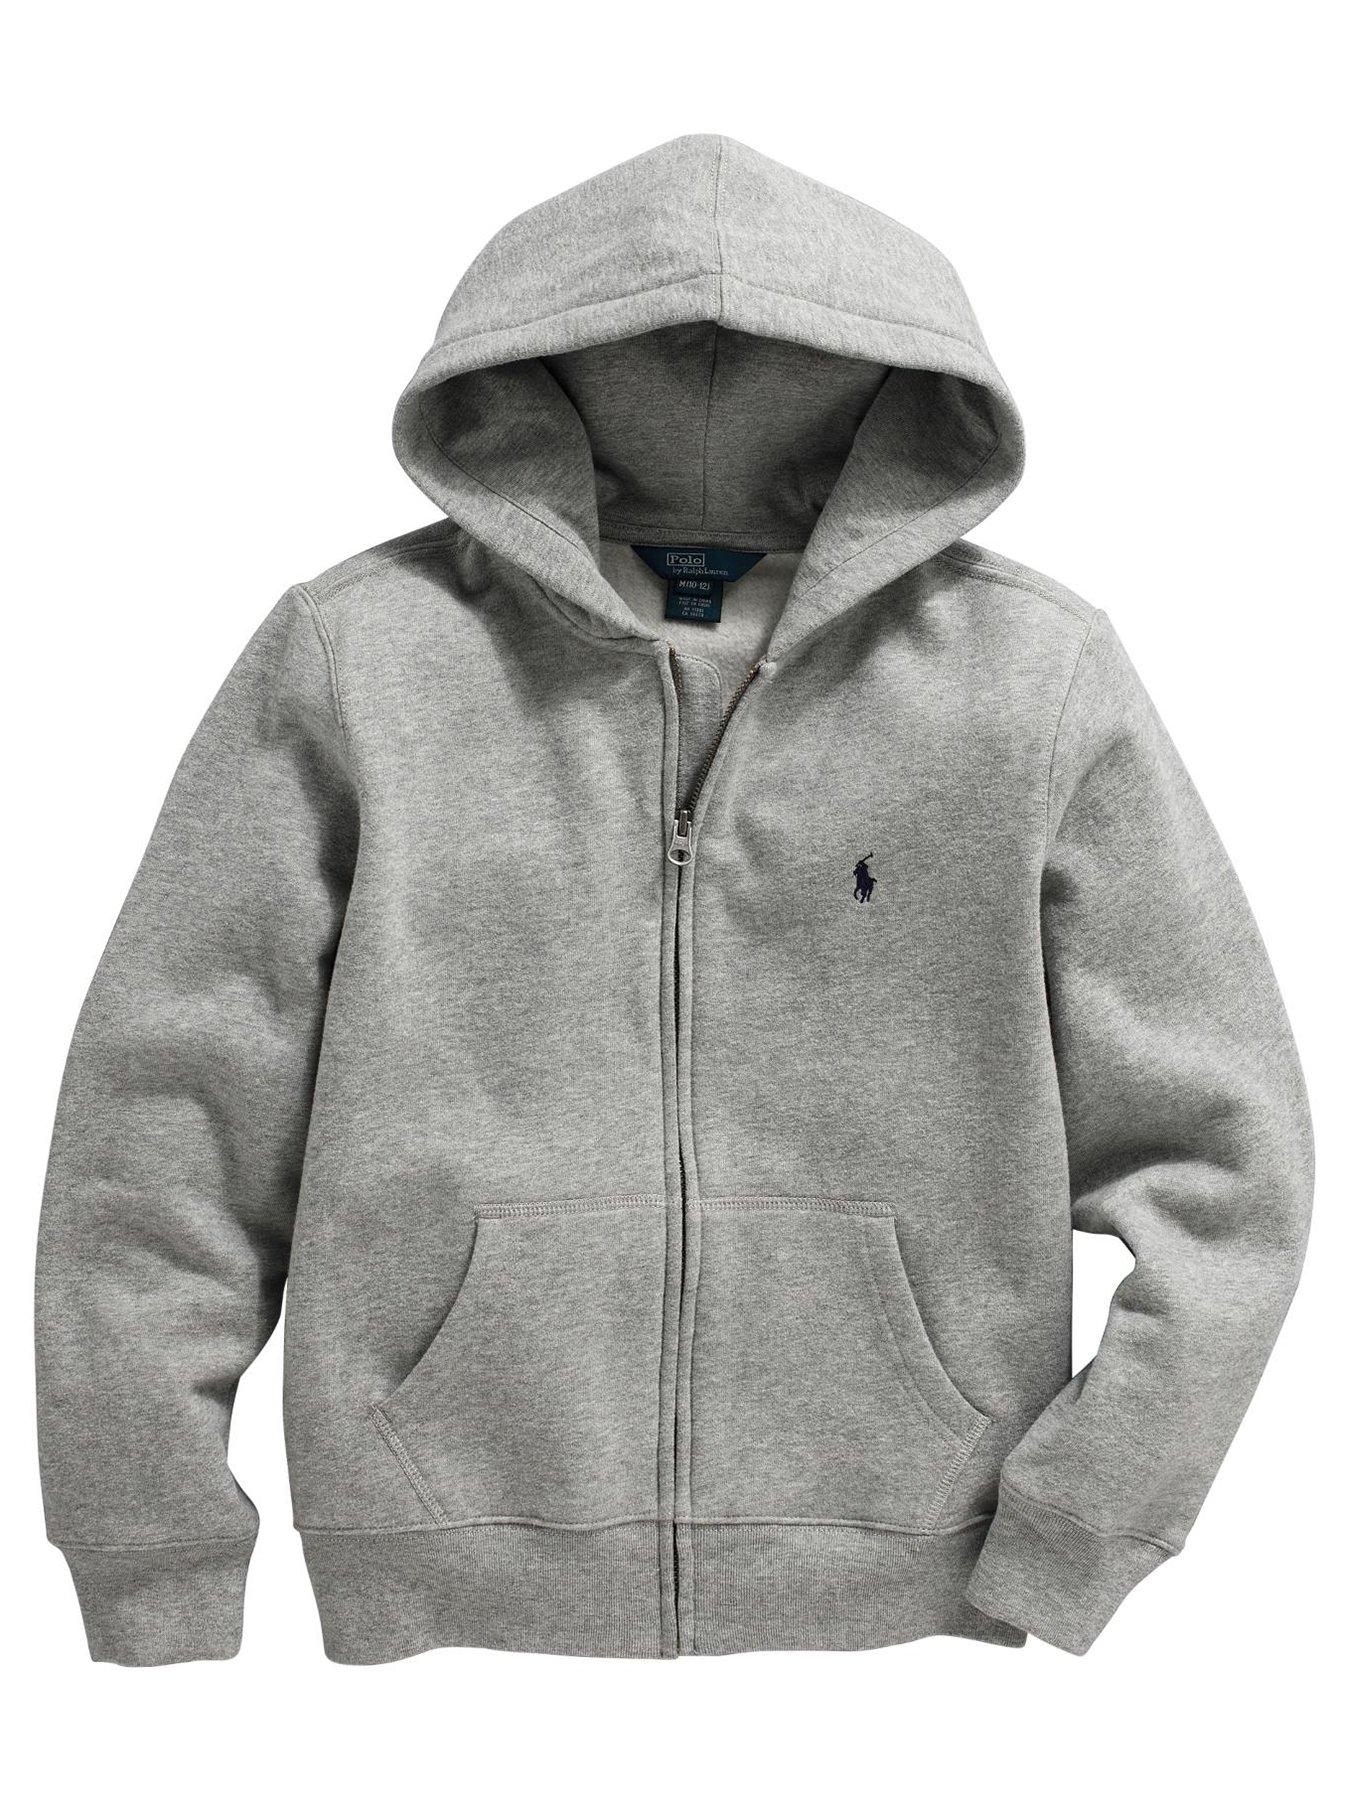 gray ralph lauren hoodie